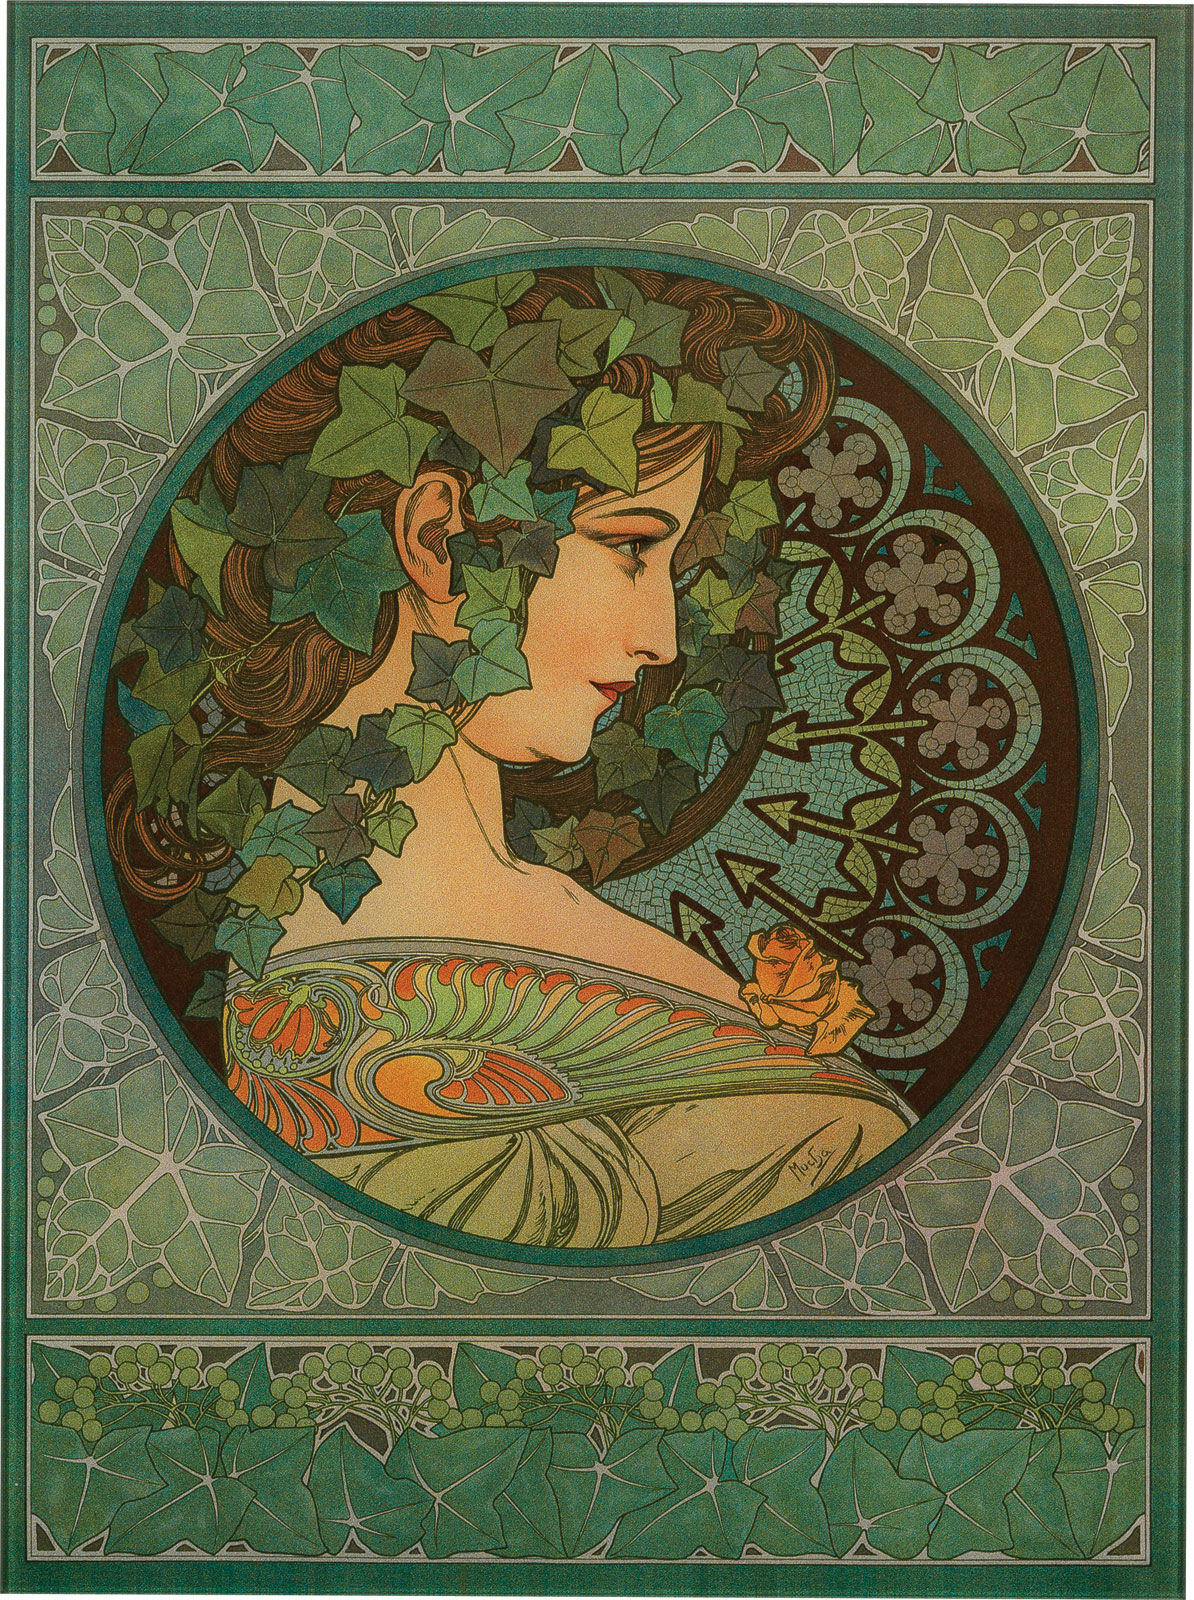 Glasbillede "Ivy" (1901) von Alphonse Mucha